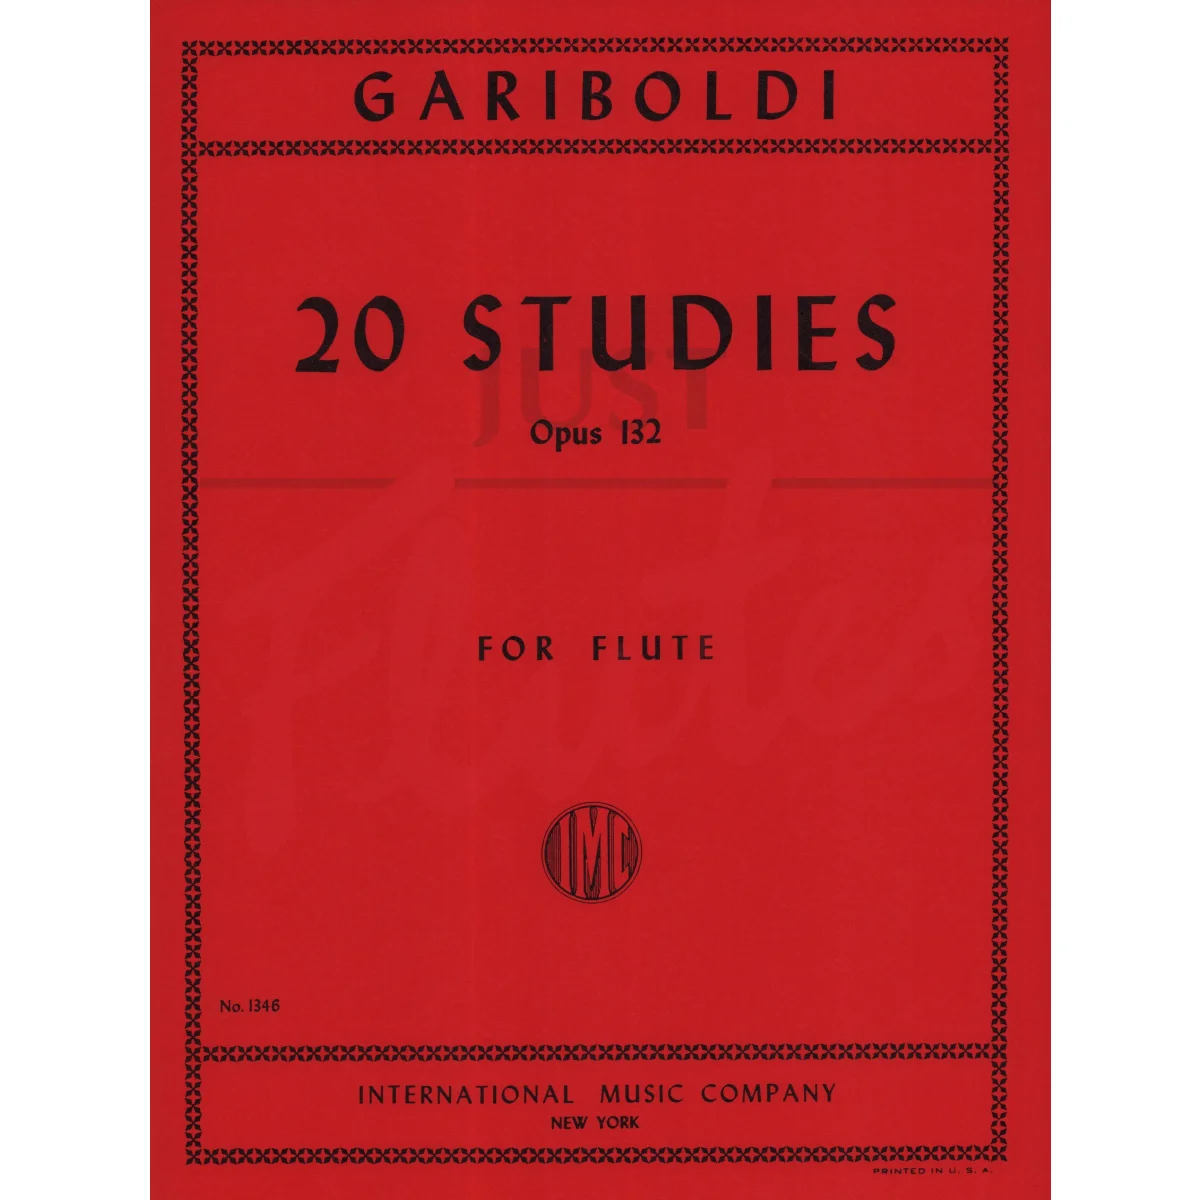 20 Studies for Flute